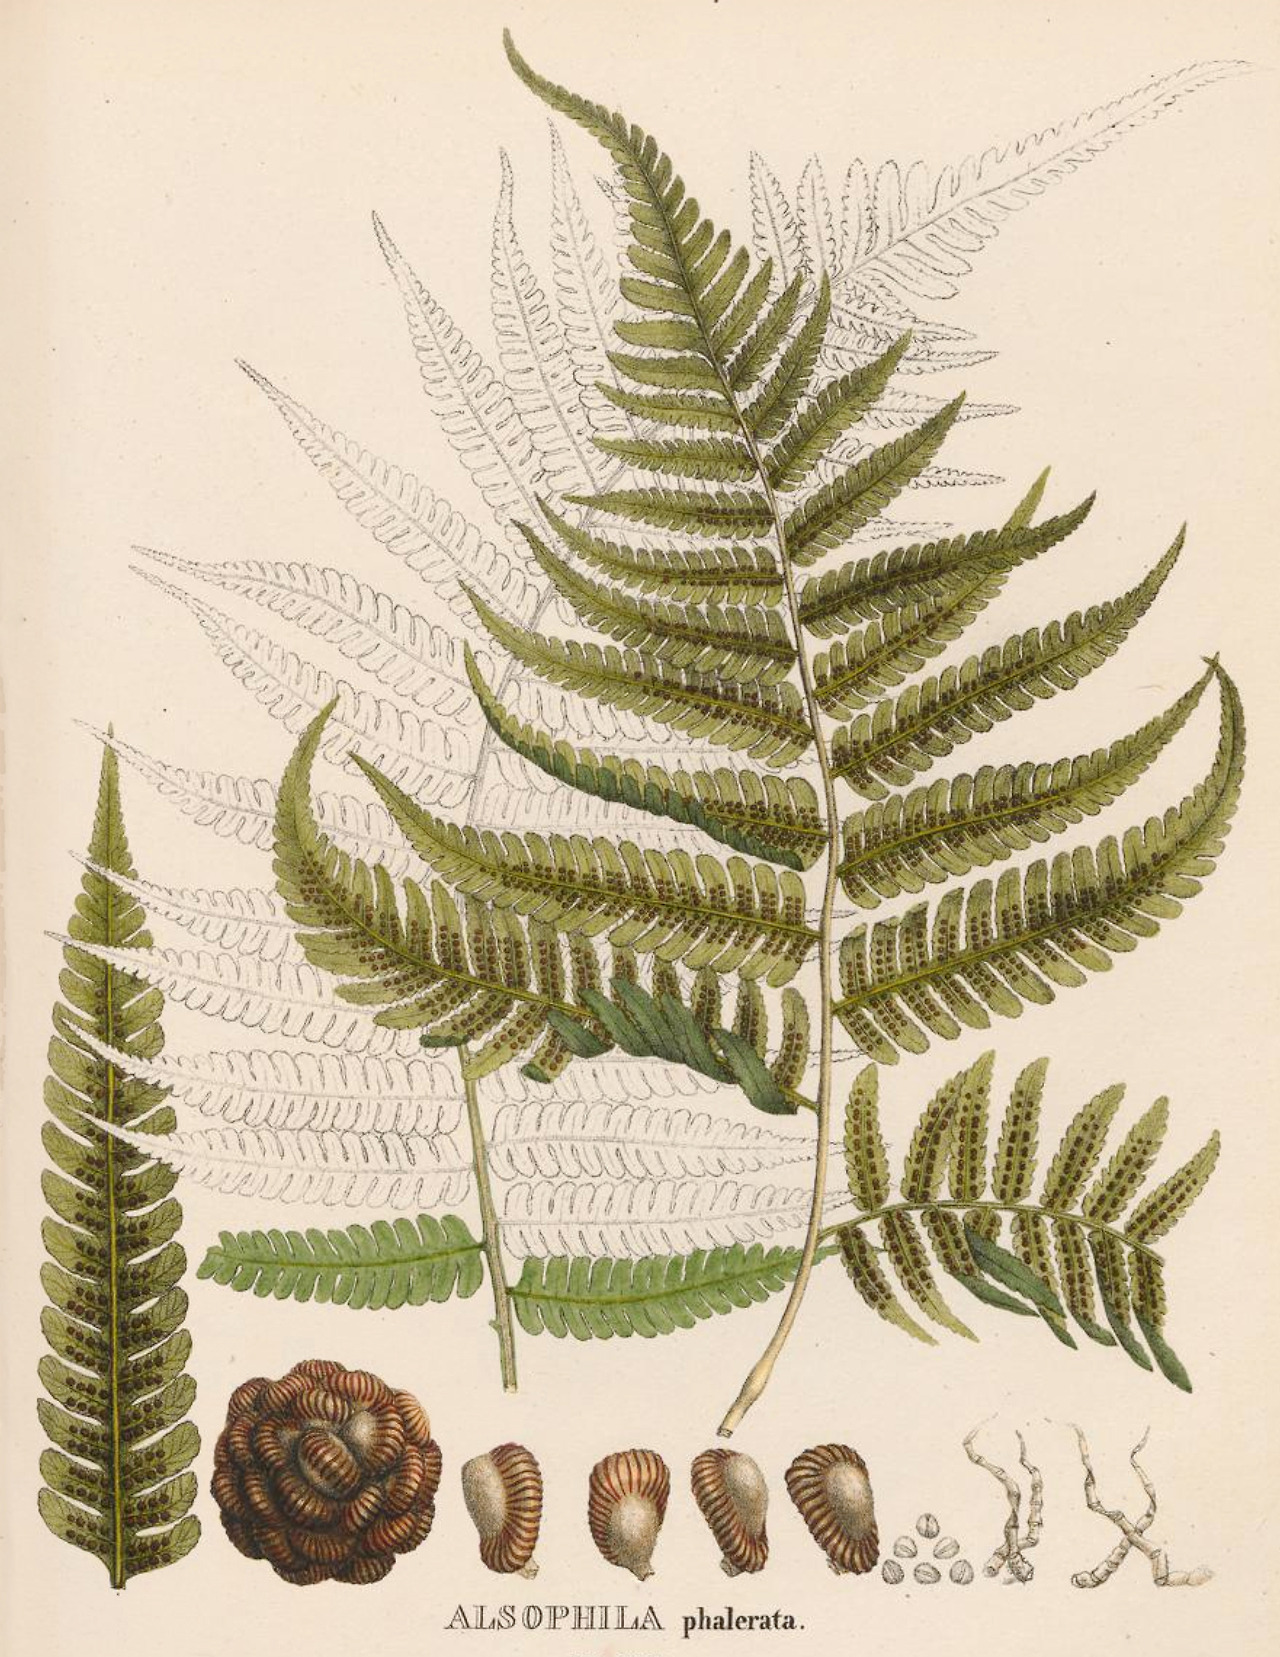 This Ivy House - clawmarks: Icones plantarum cryptogamicarum